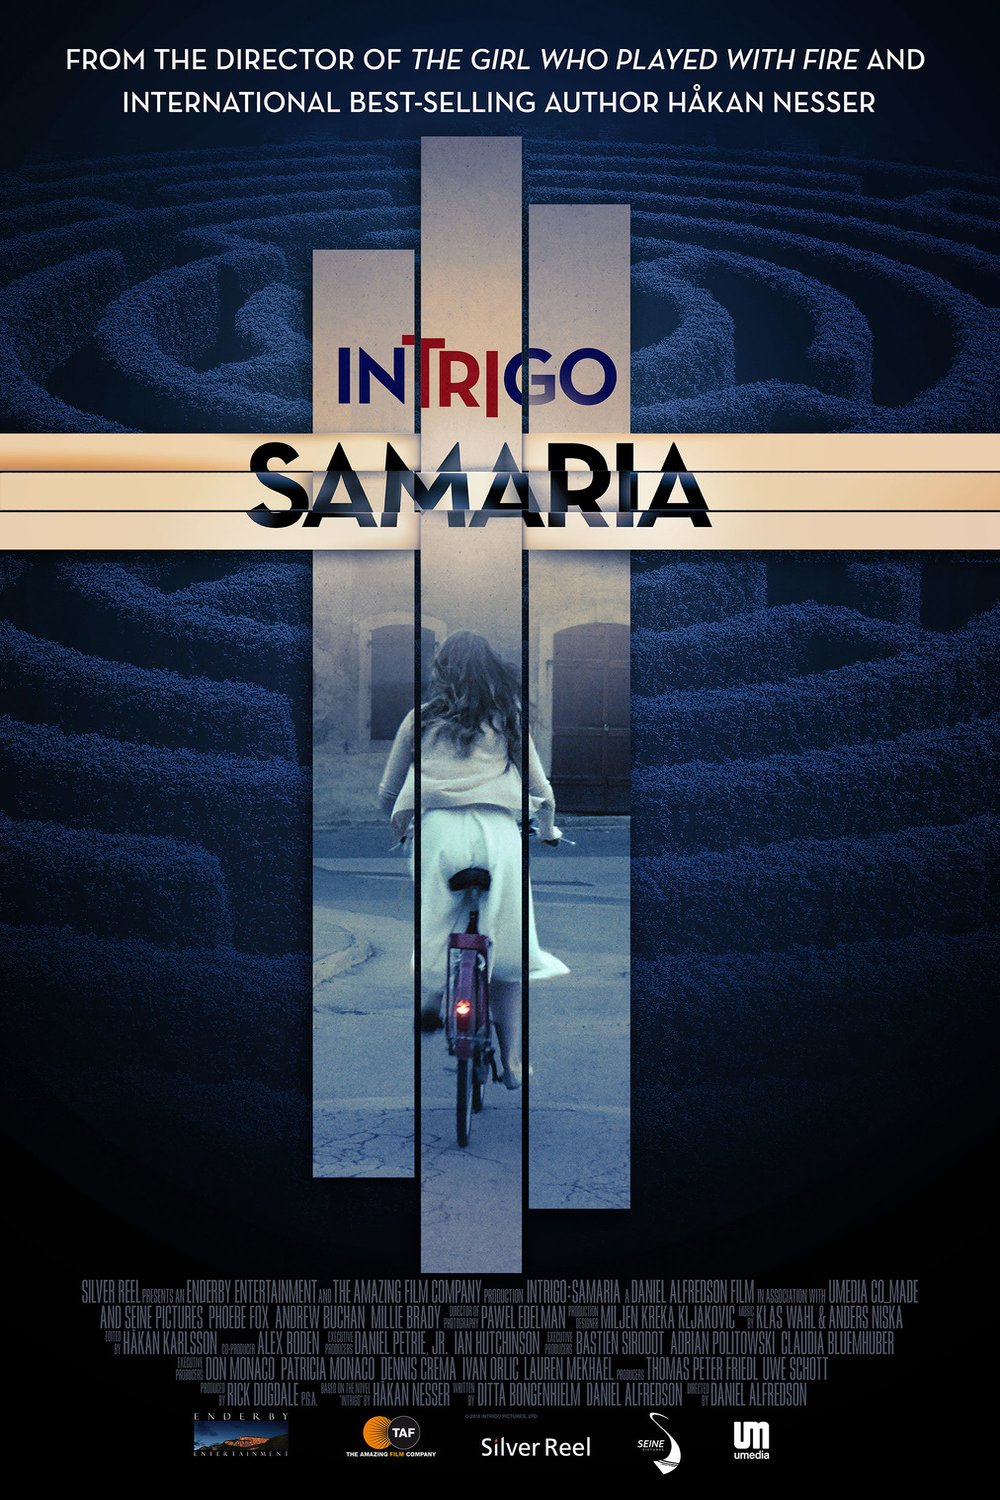 Poster of the movie Intrigo: Samaria